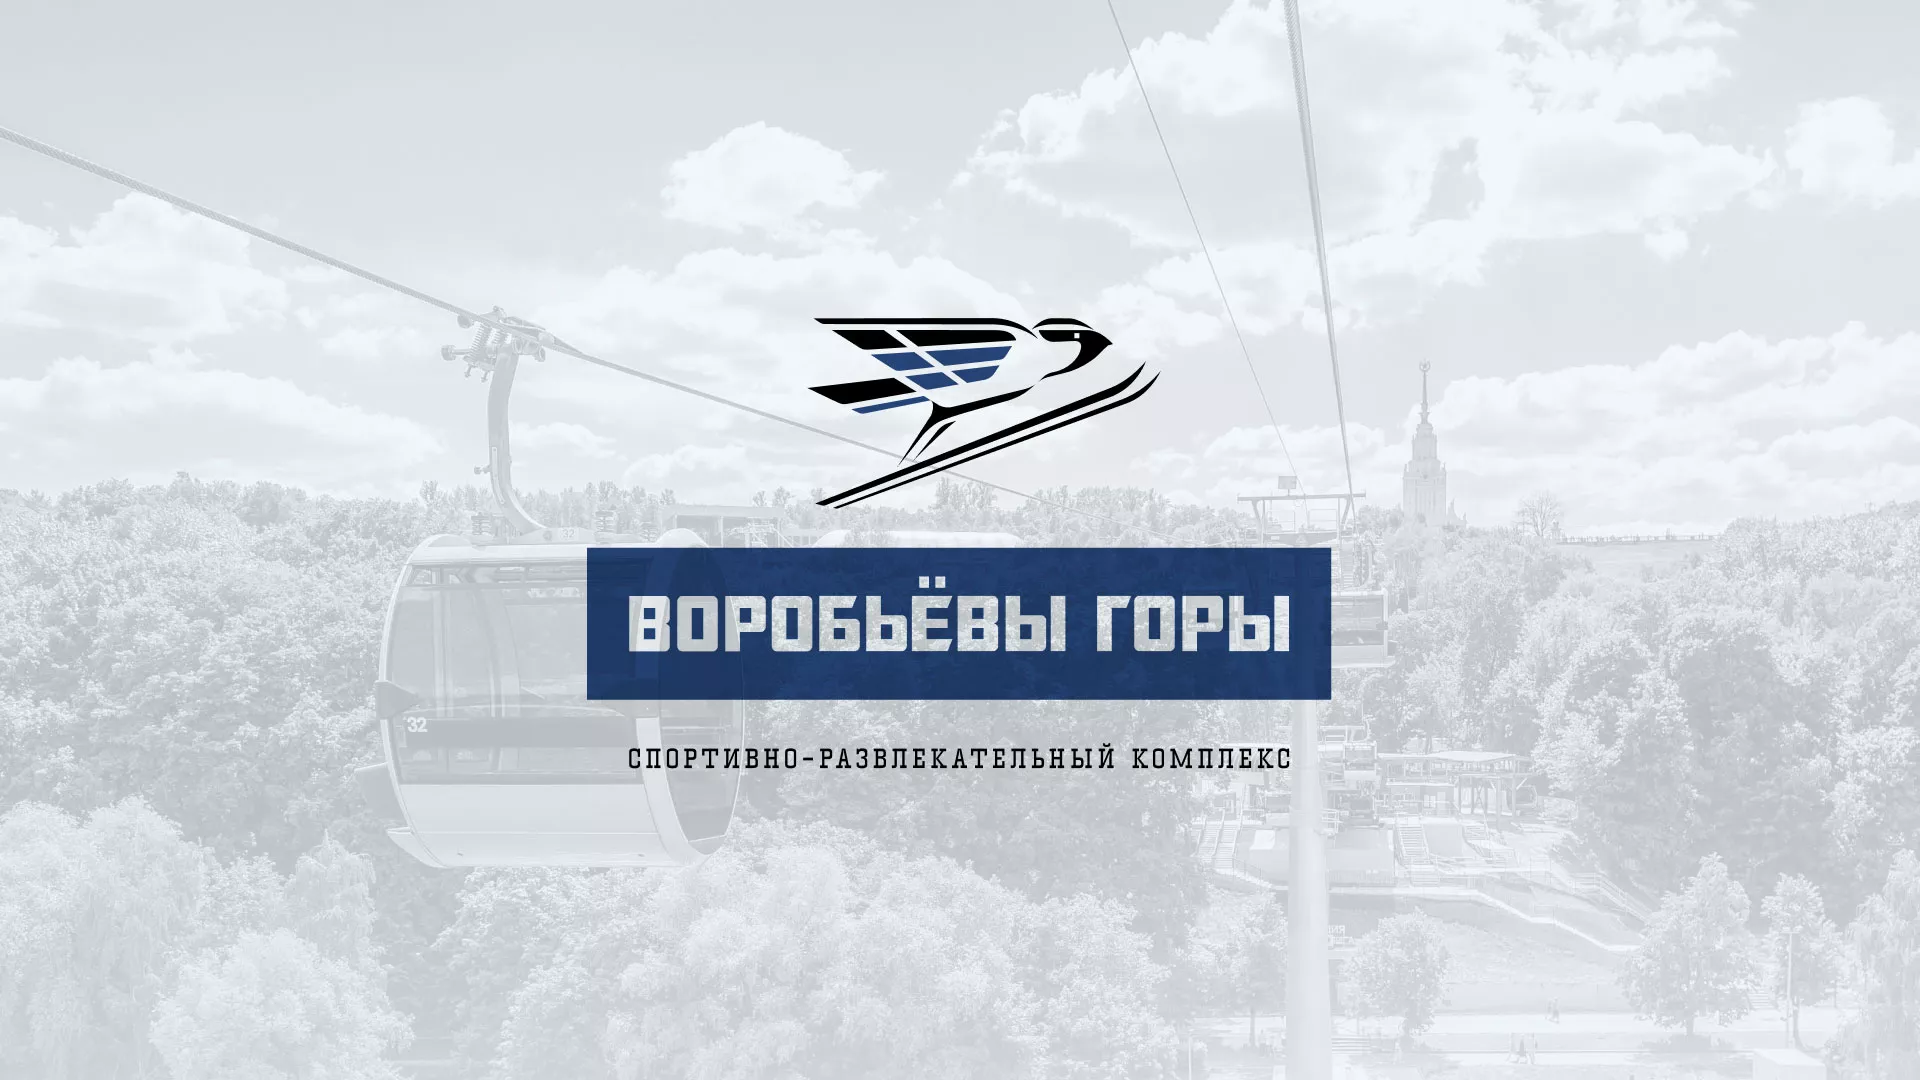 Разработка сайта в Ростове-на-Дону для спортивно-развлекательного комплекса «Воробьёвы горы»